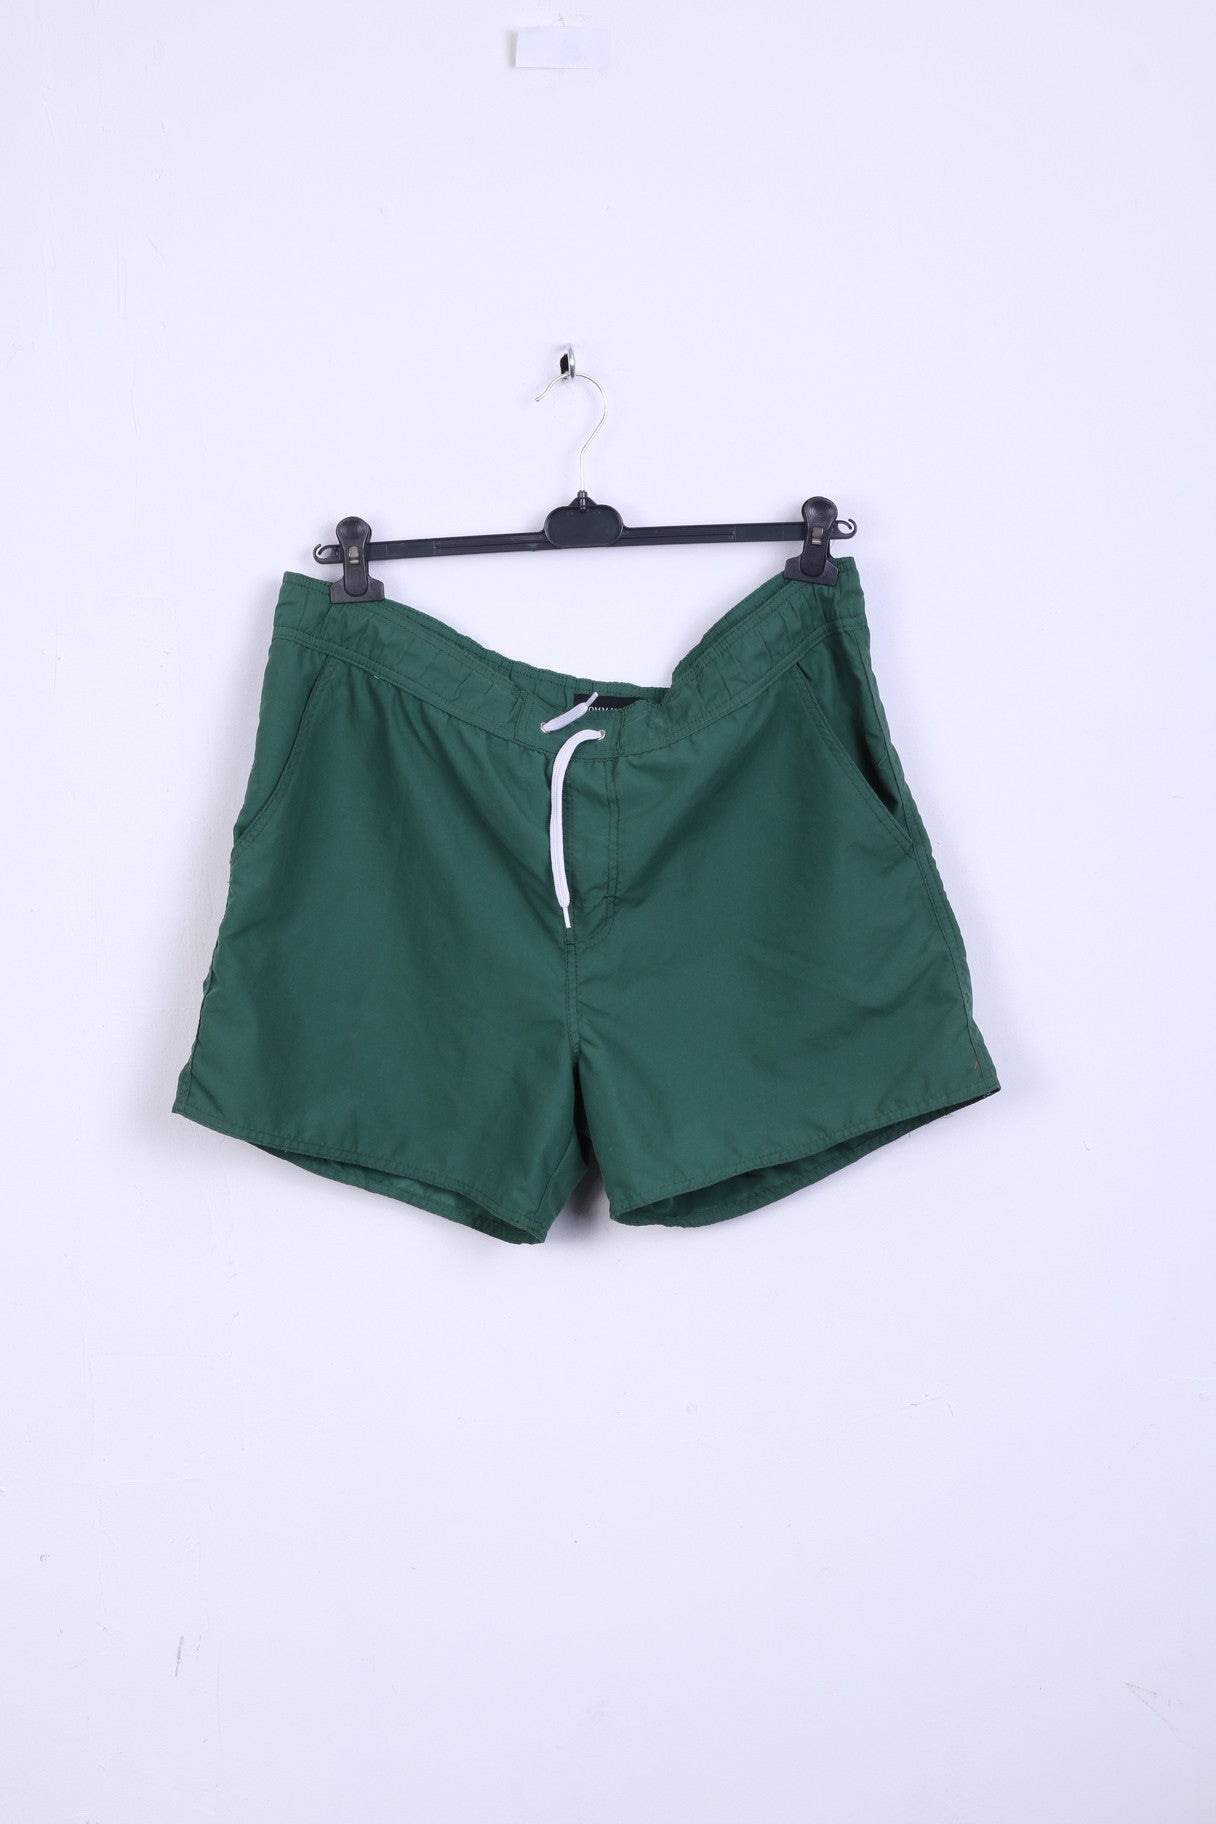 COMMANDER Mens L Shorts Pants Green Summer